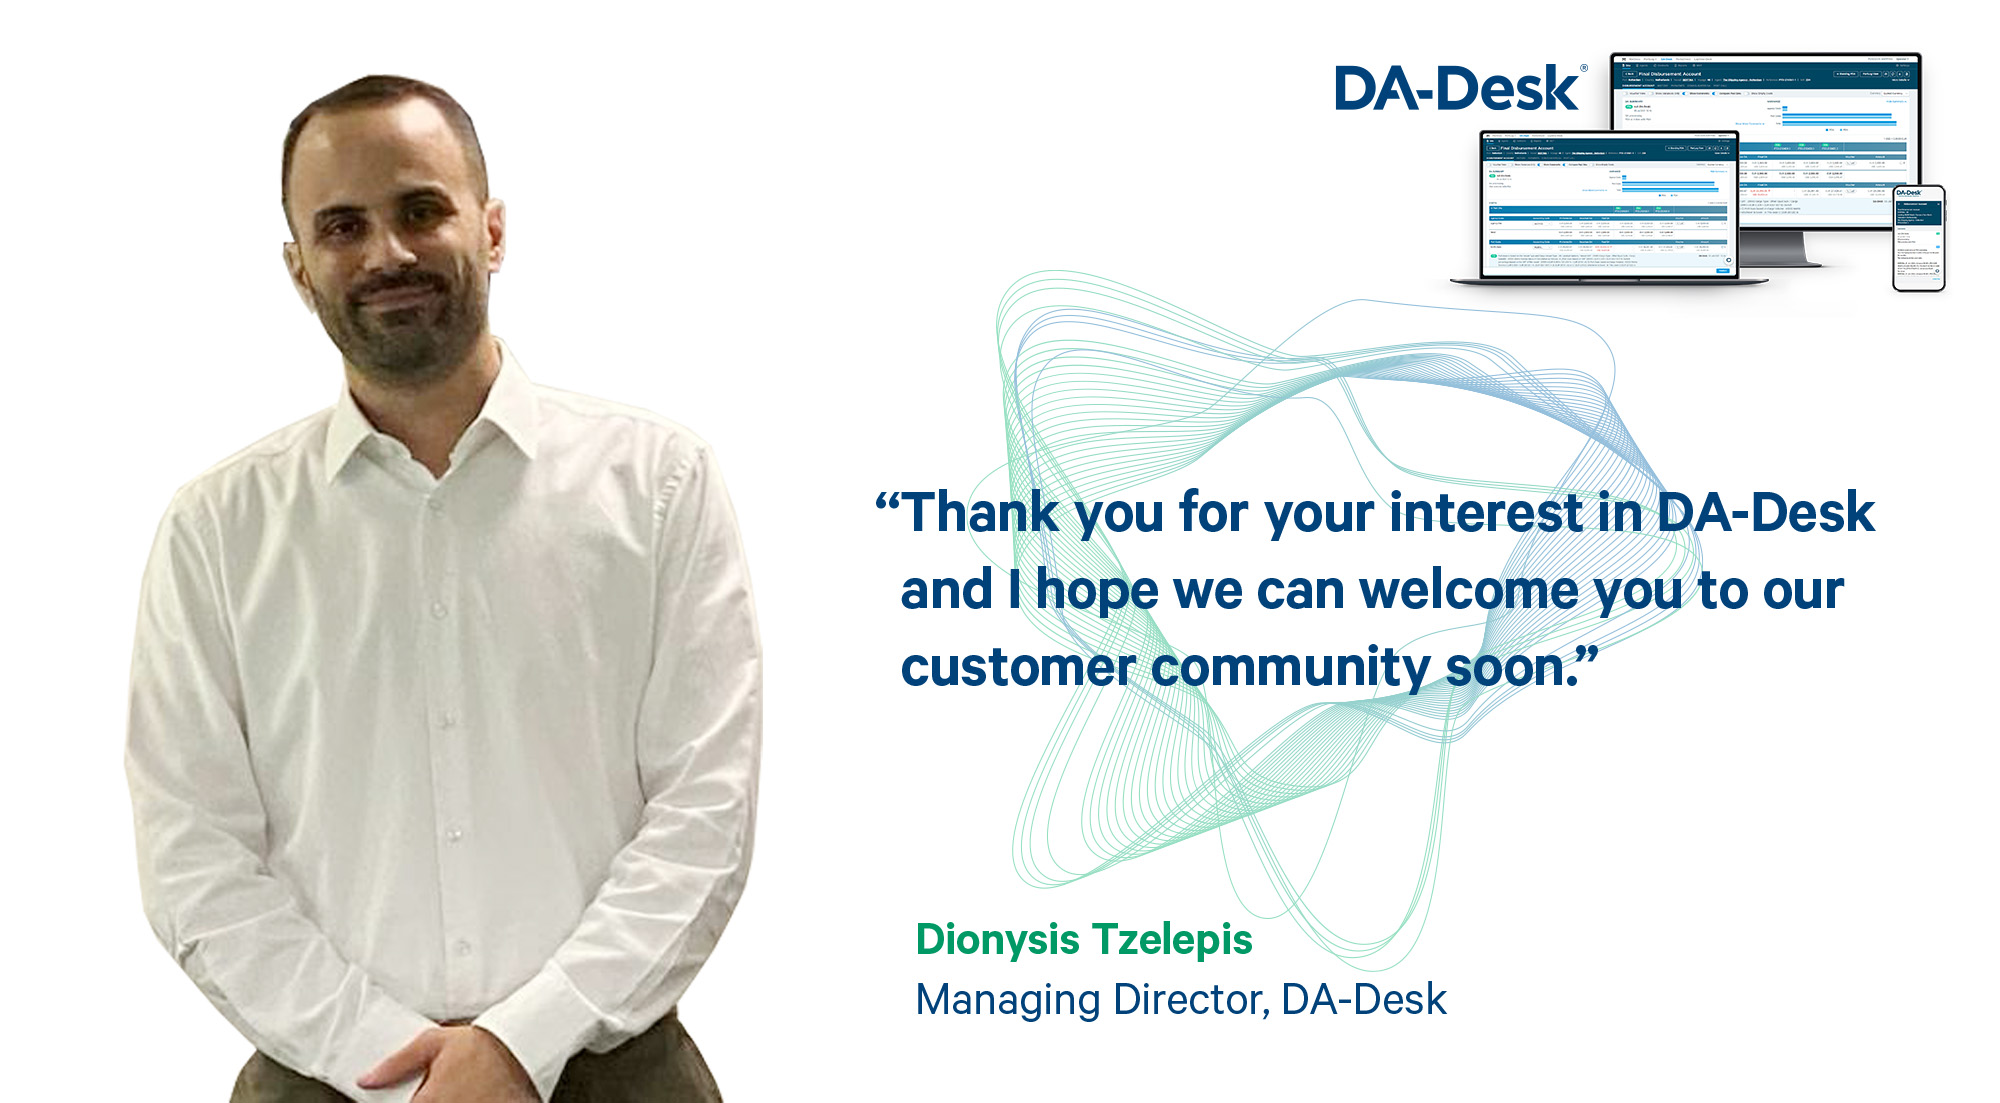 Dionysis Tzelepis welcome message to DA-Desk